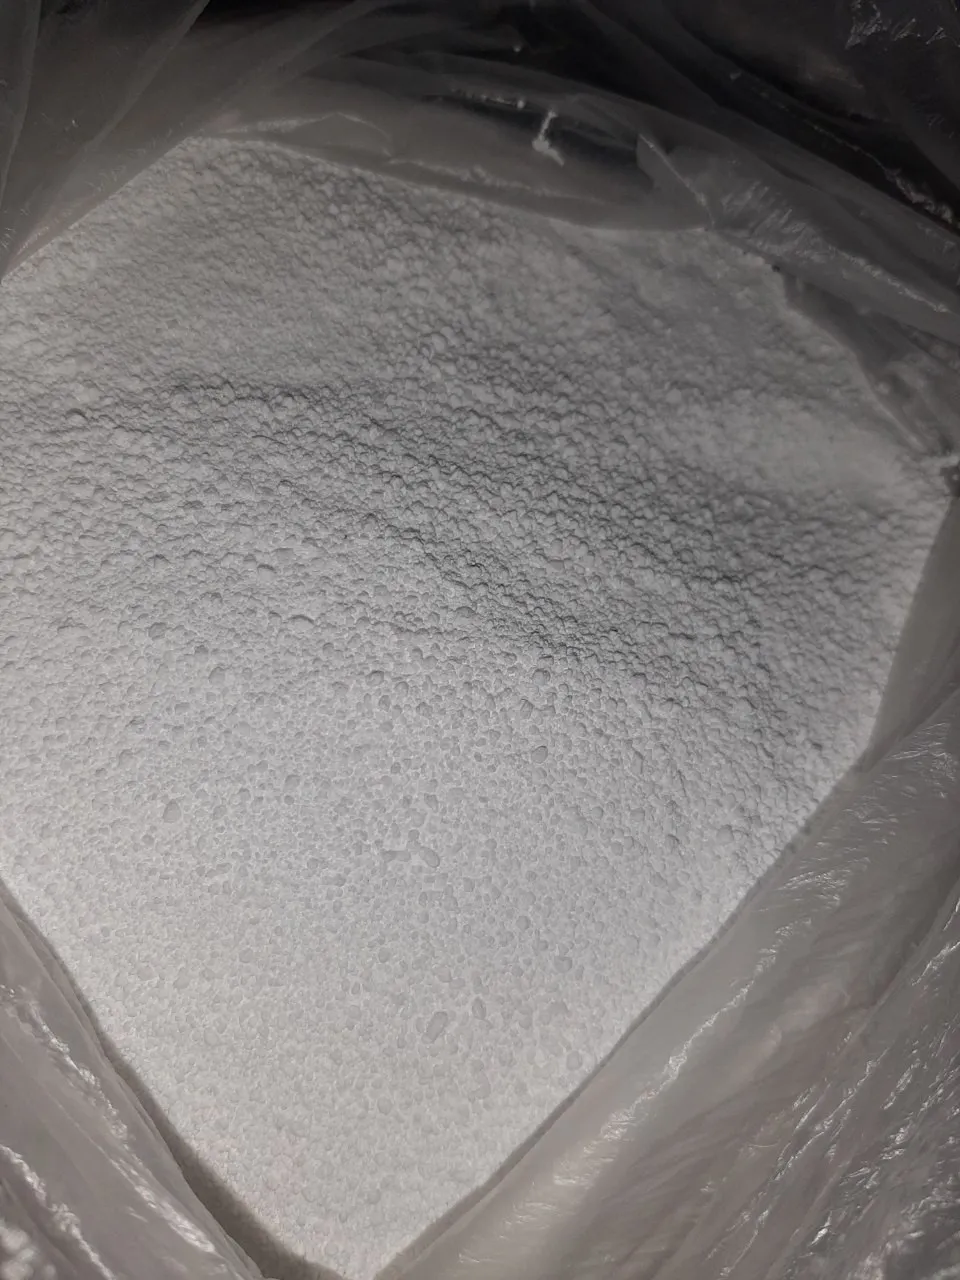 Natriy percarbonat (Sodium percarbonate)#2